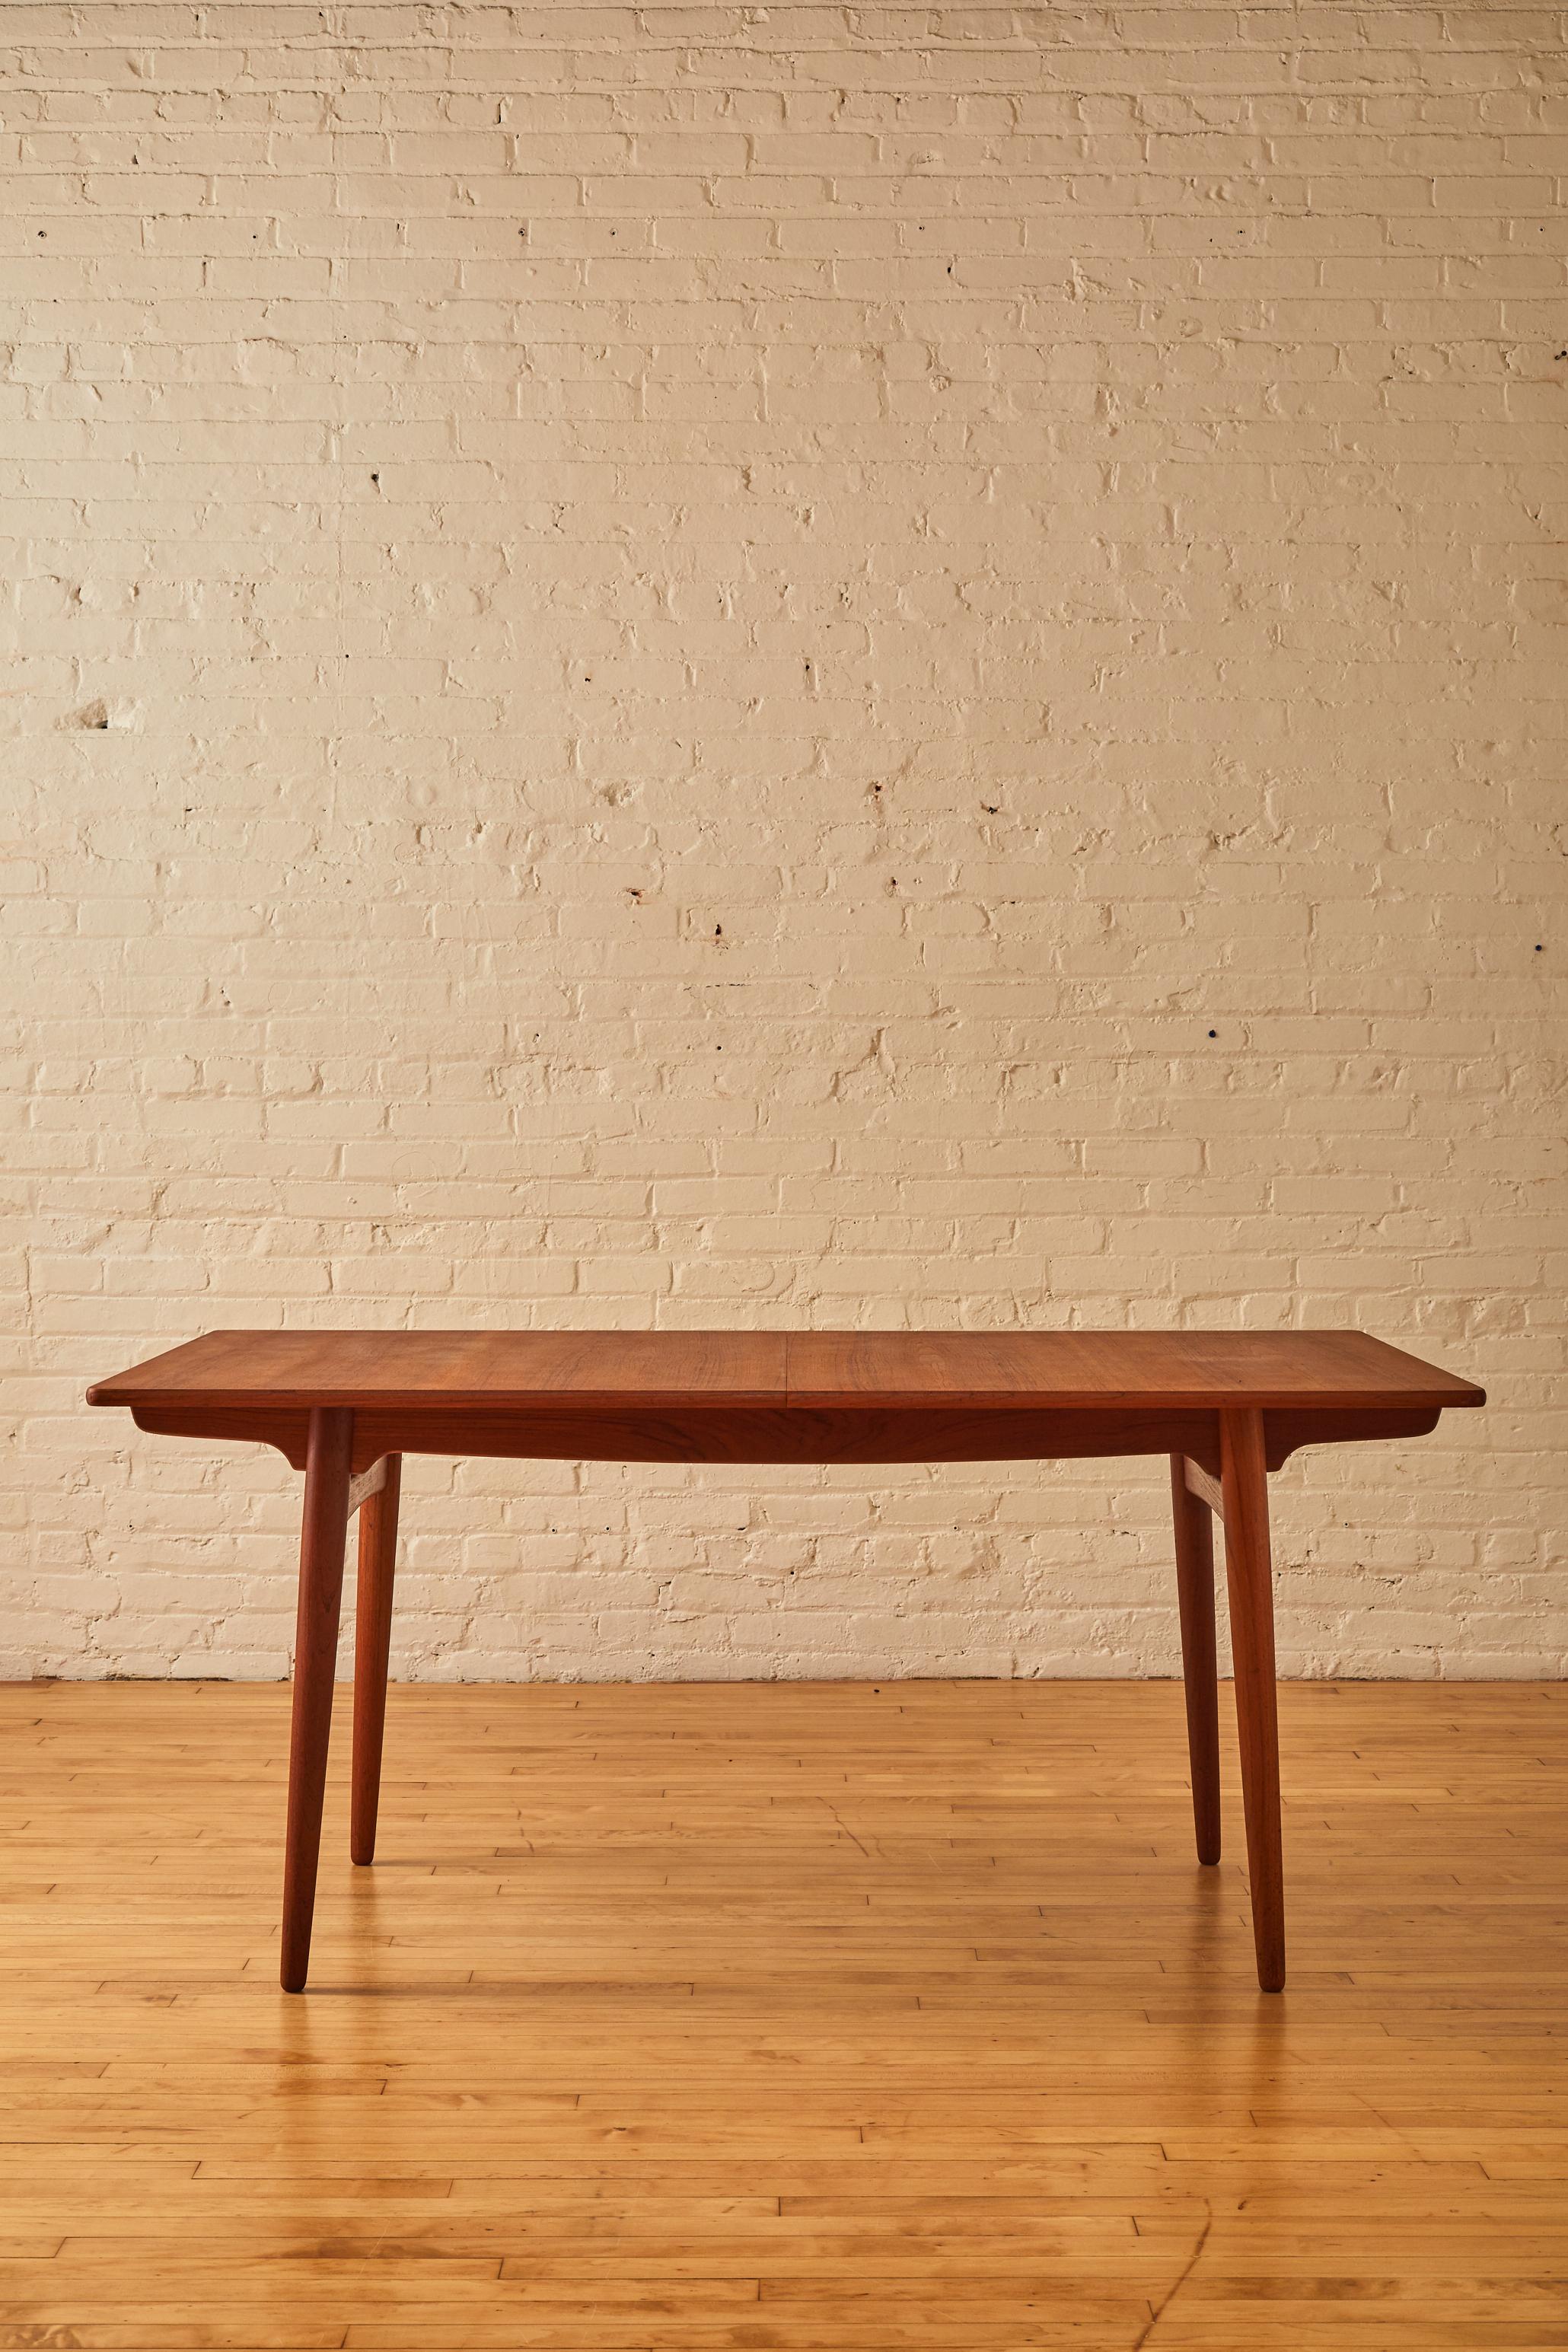 Hans J. Wegner dining table in solid American walnut wood.

